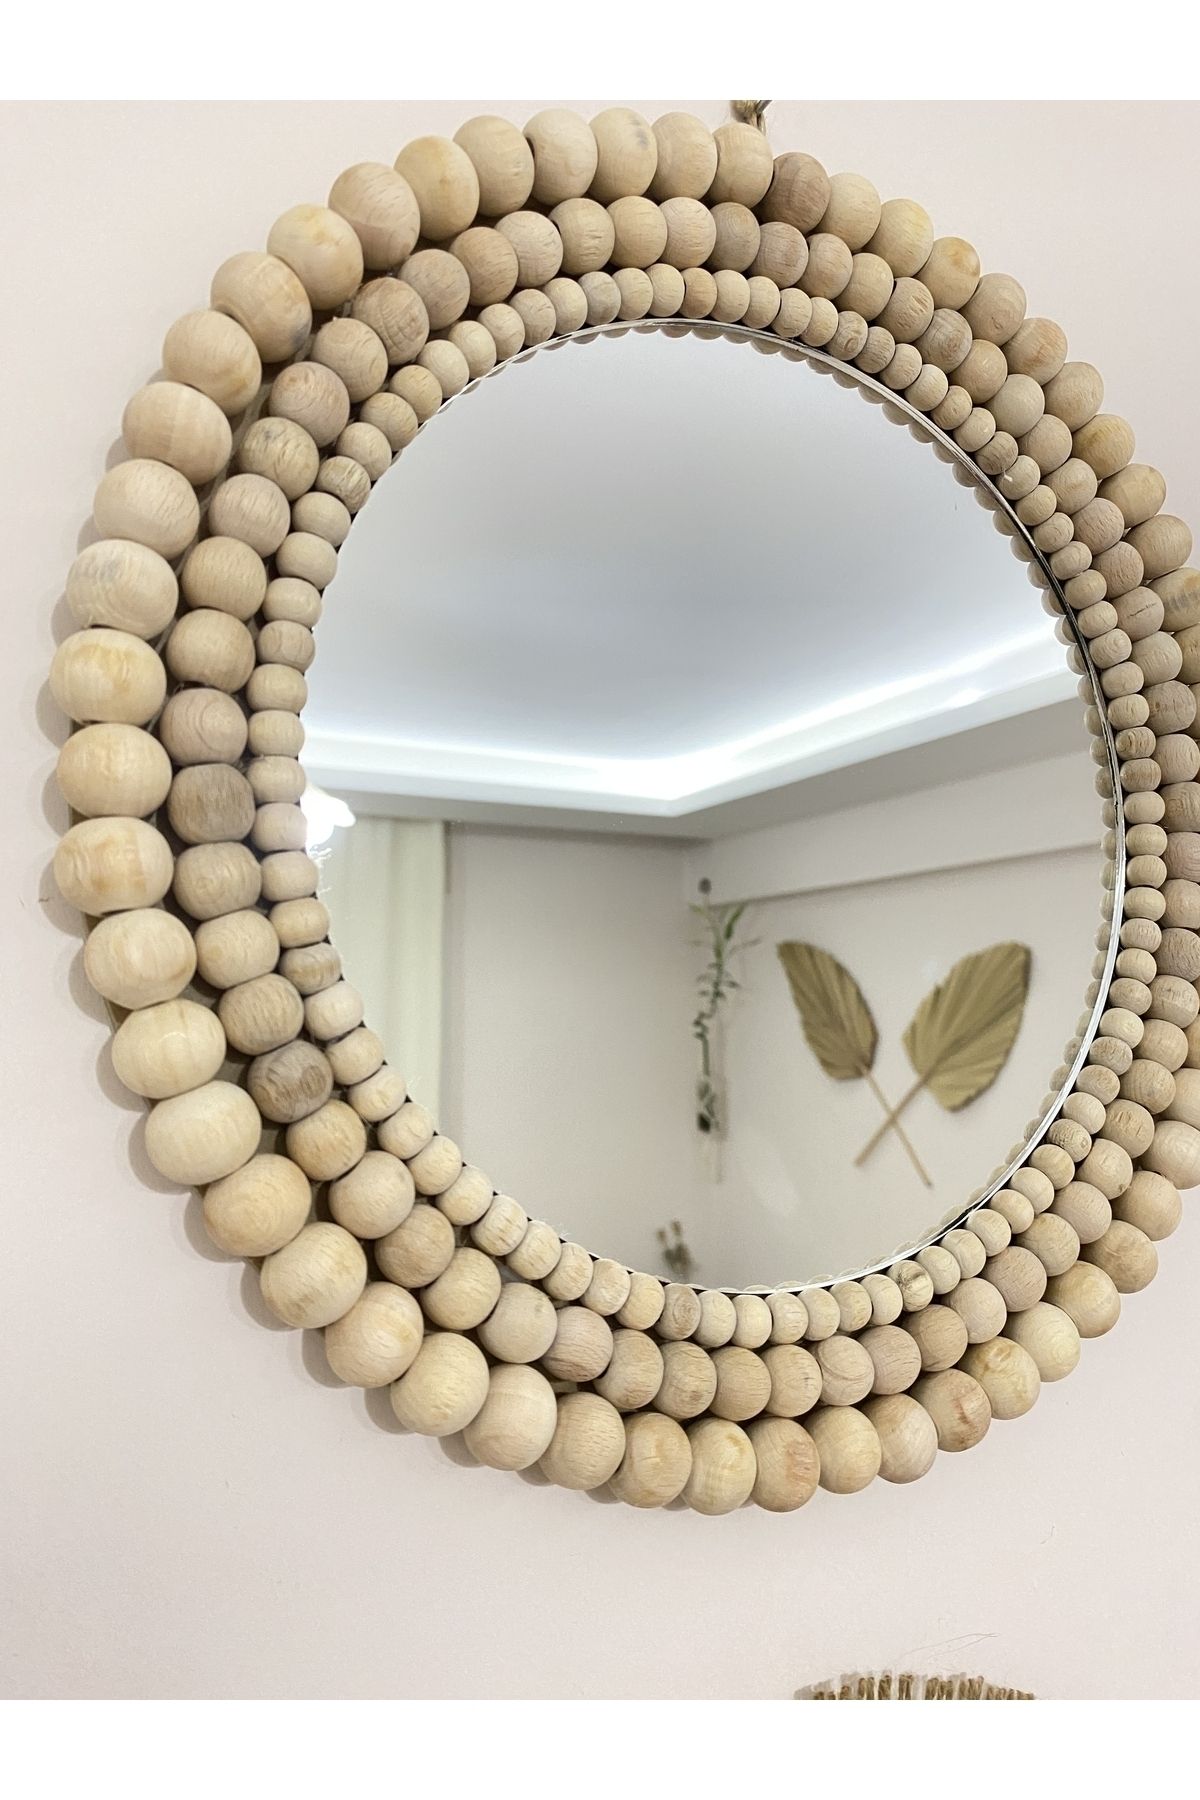 Boncukafası Tasarım Ahşap Boncuk Ayna Duvar Aynası Konsol Aynası Dekoratif Ayna 30x22